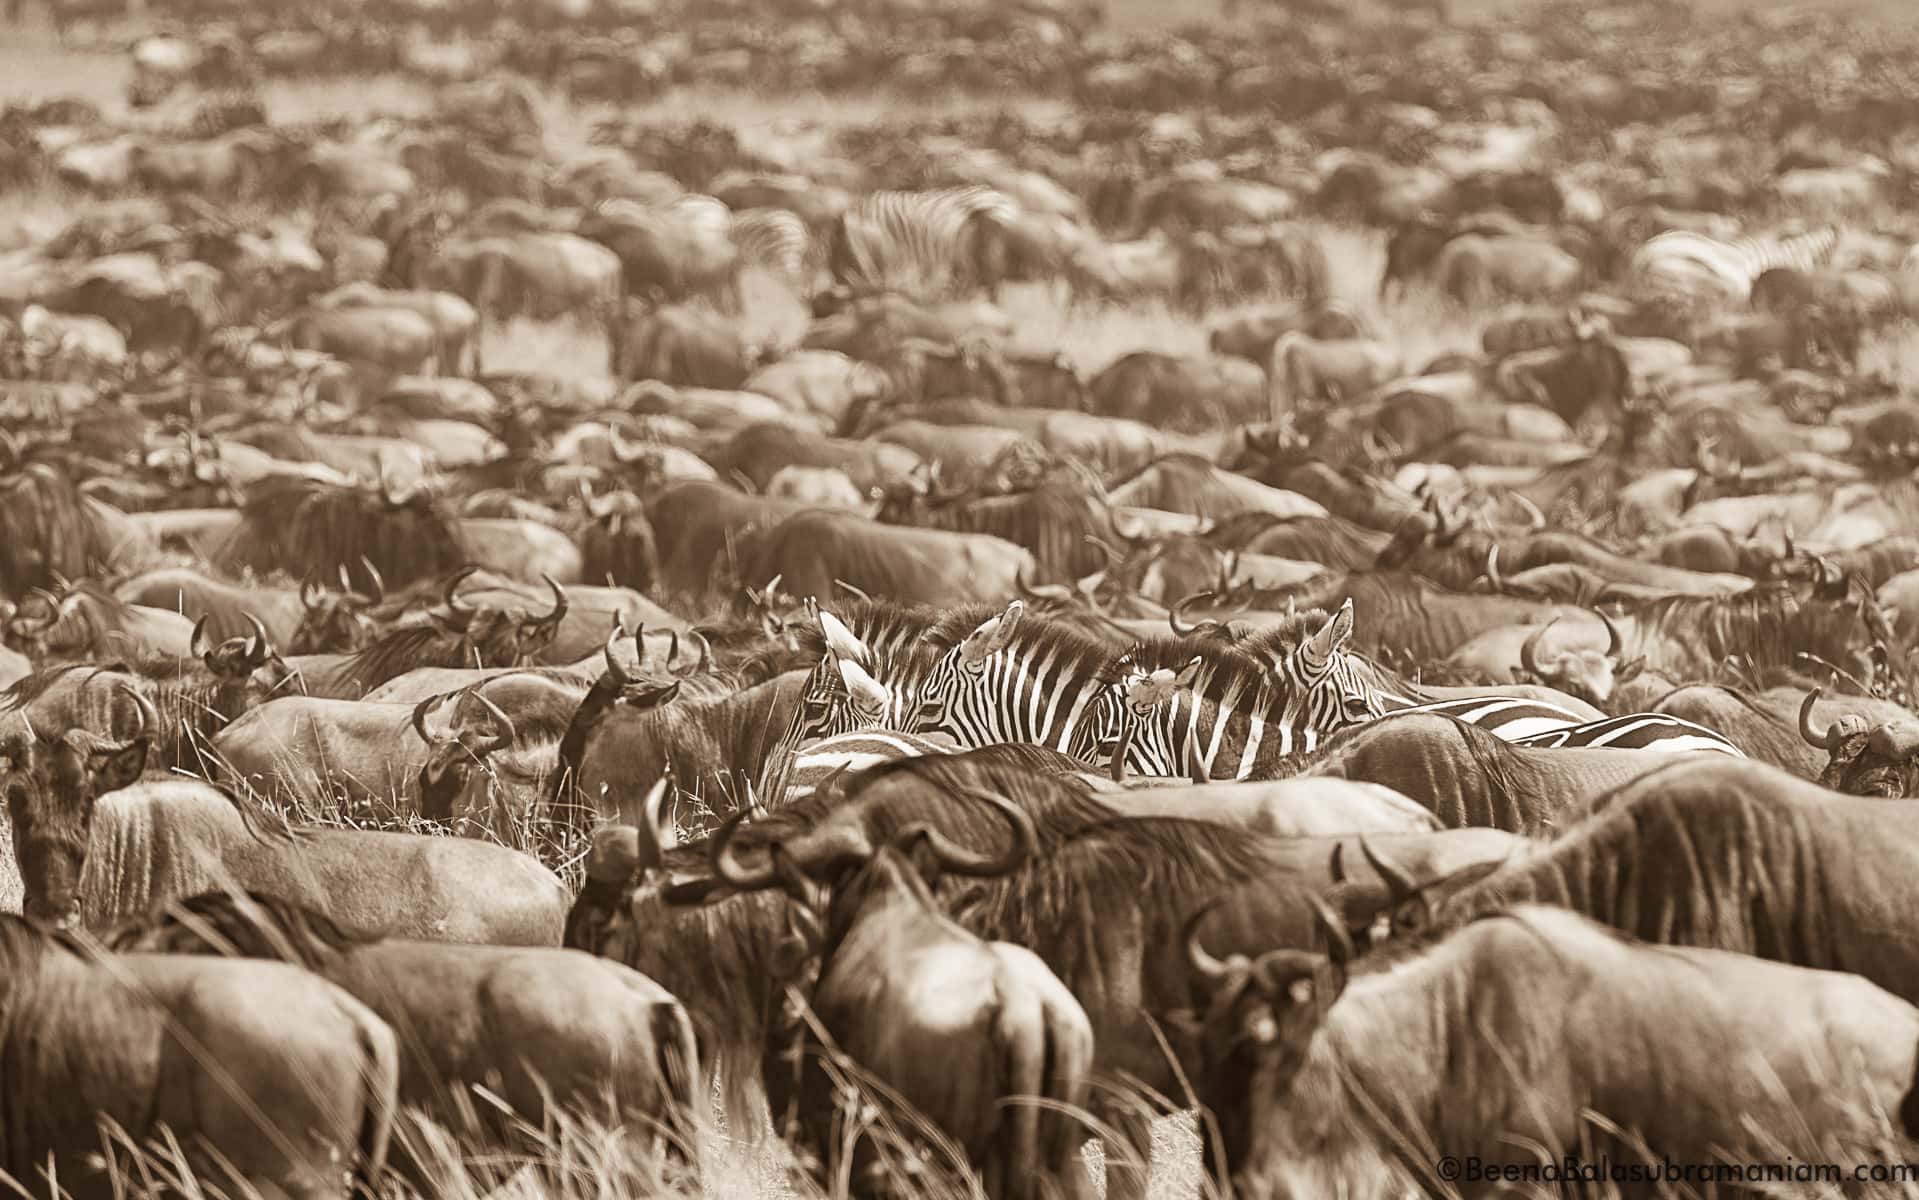 The mega herd in sepia